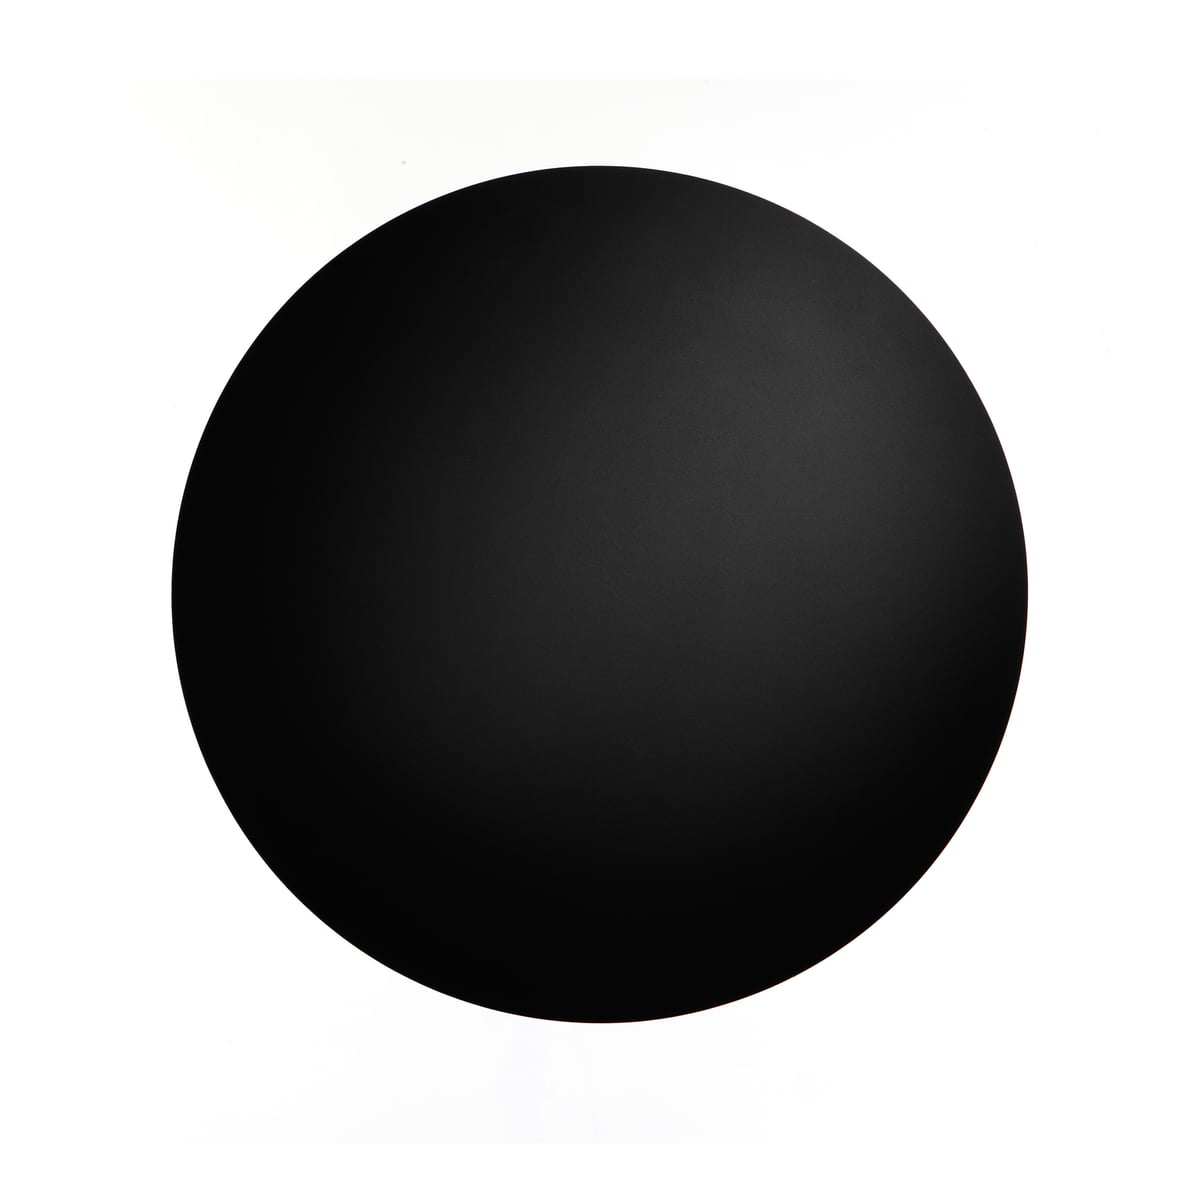 Картина черный круг. Черный круг. Черный кружок. Темный круг. Черные кружочки.